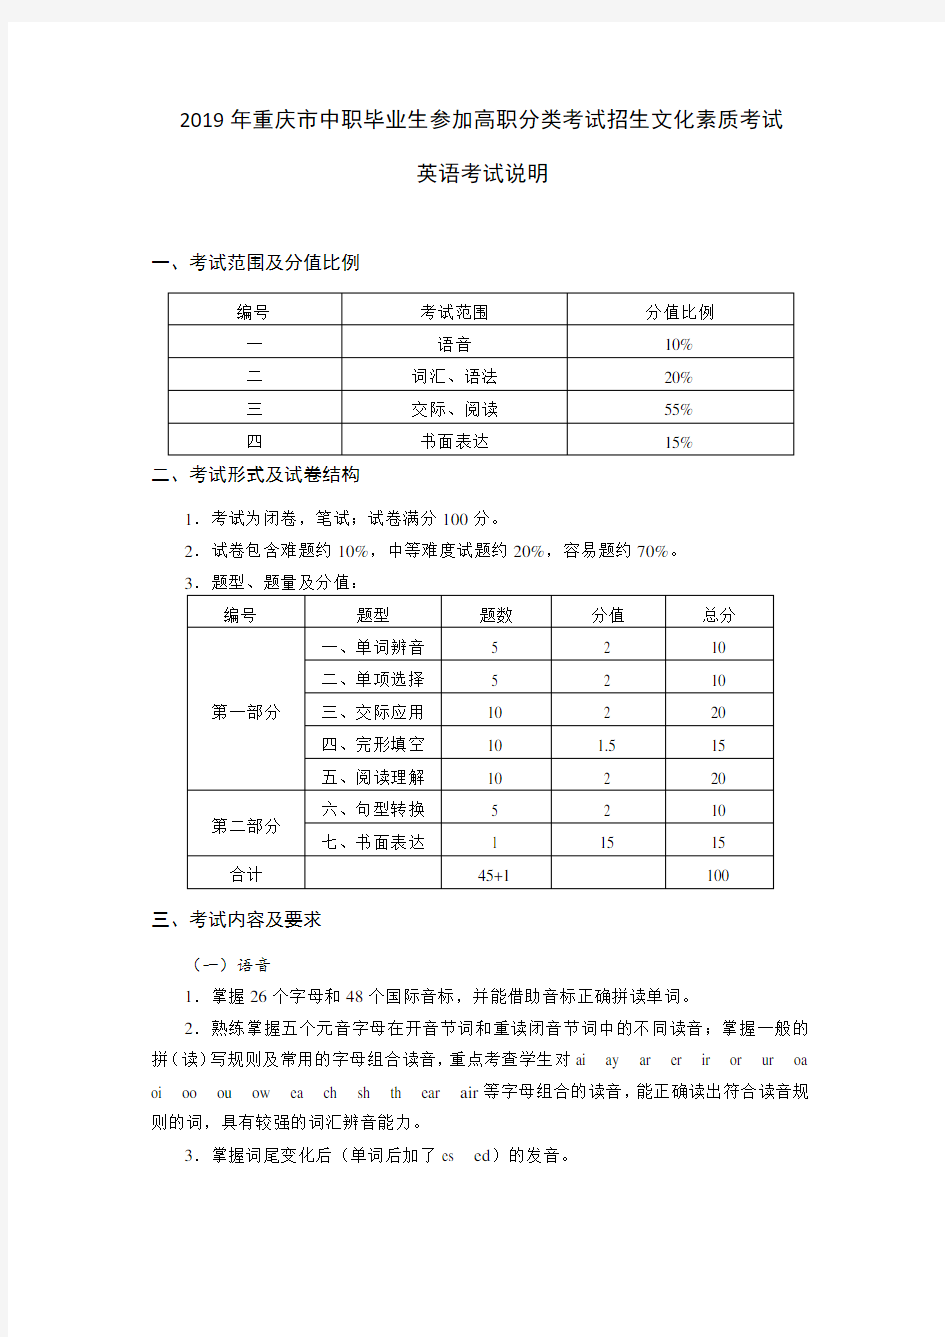 2019高职分类考试招生中职文化素质考试英语考试-重庆市教育考试院